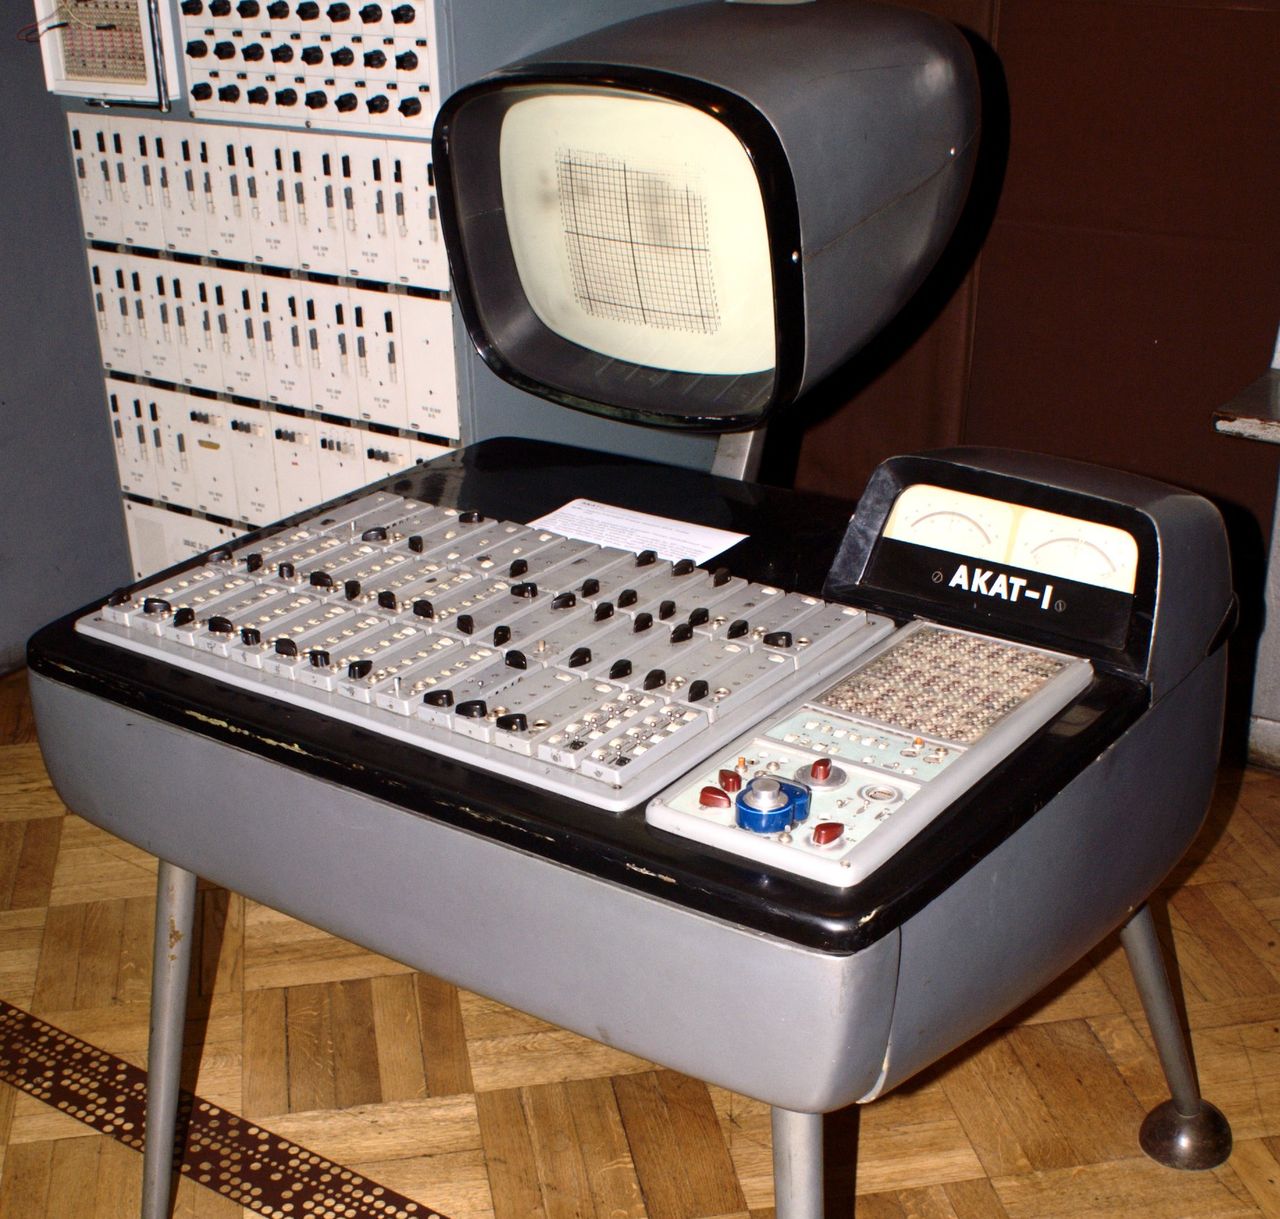 AKAT-1 — tranzystorowy analizator równań różniczkowych. Dzieło Jacka Karpińskiego